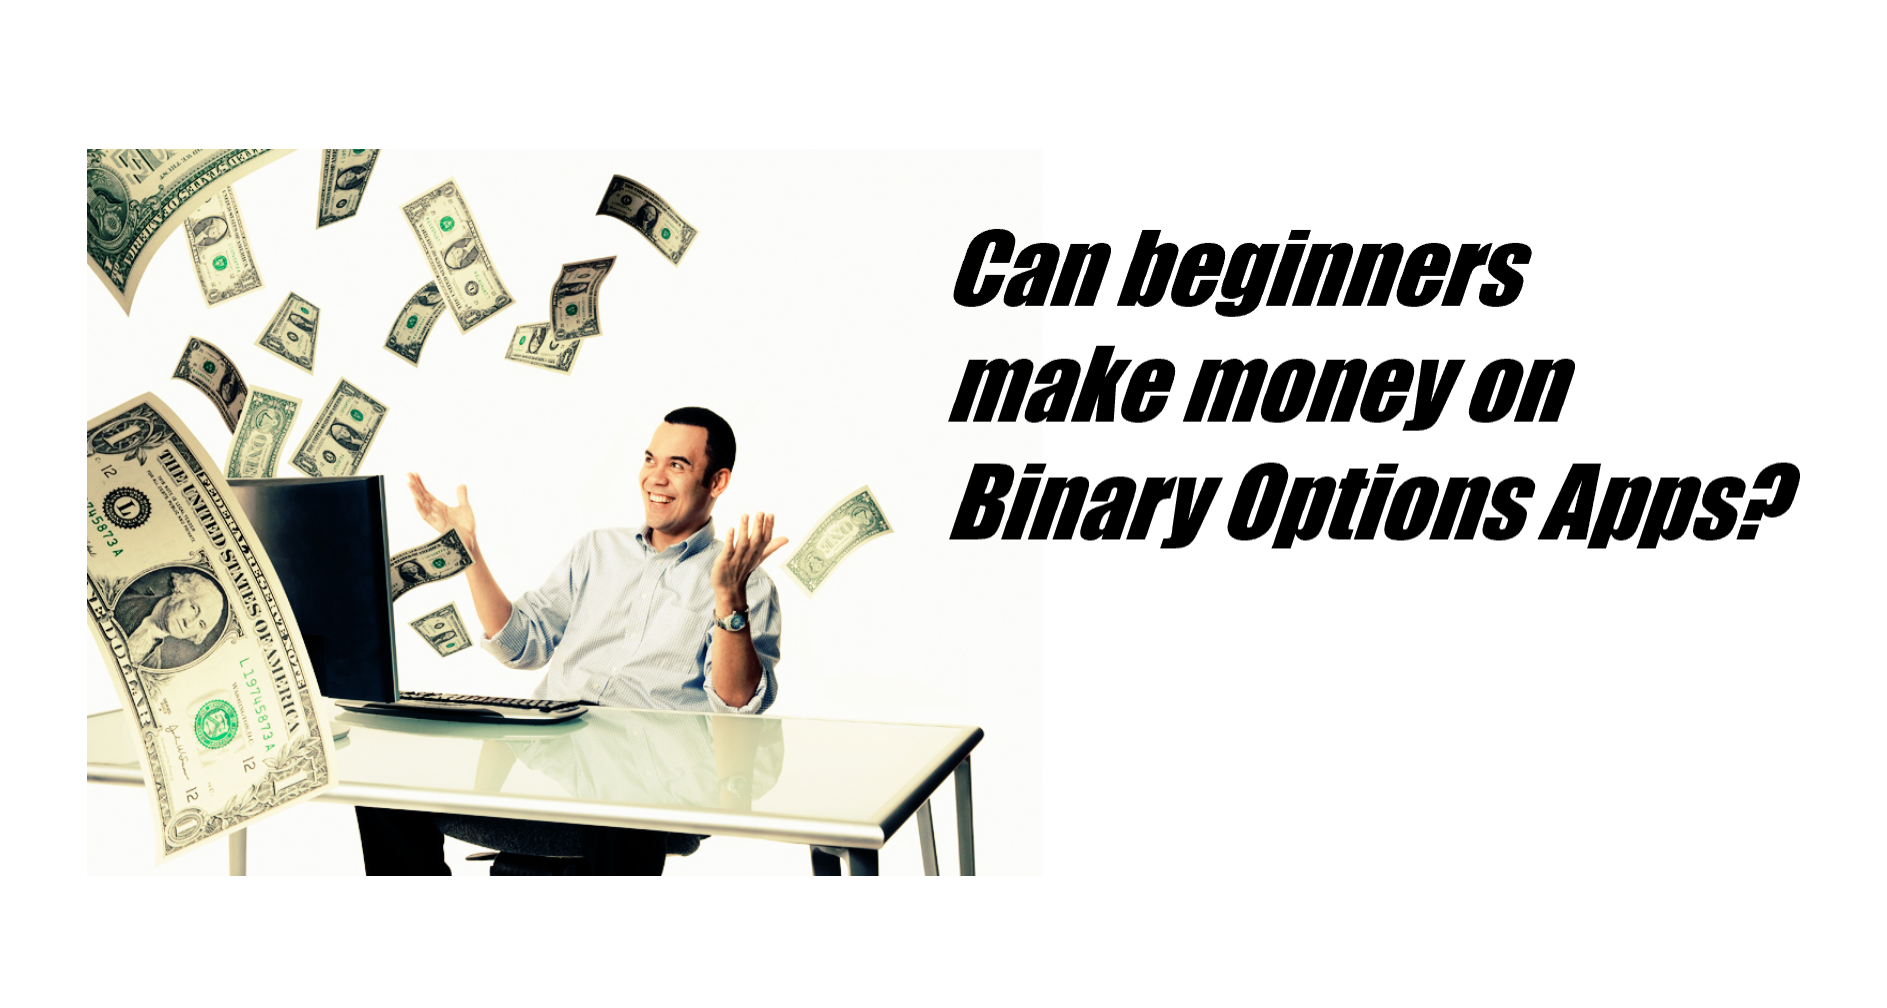 Können Anfänger mit binären Optionen Apps Geld verdienen?